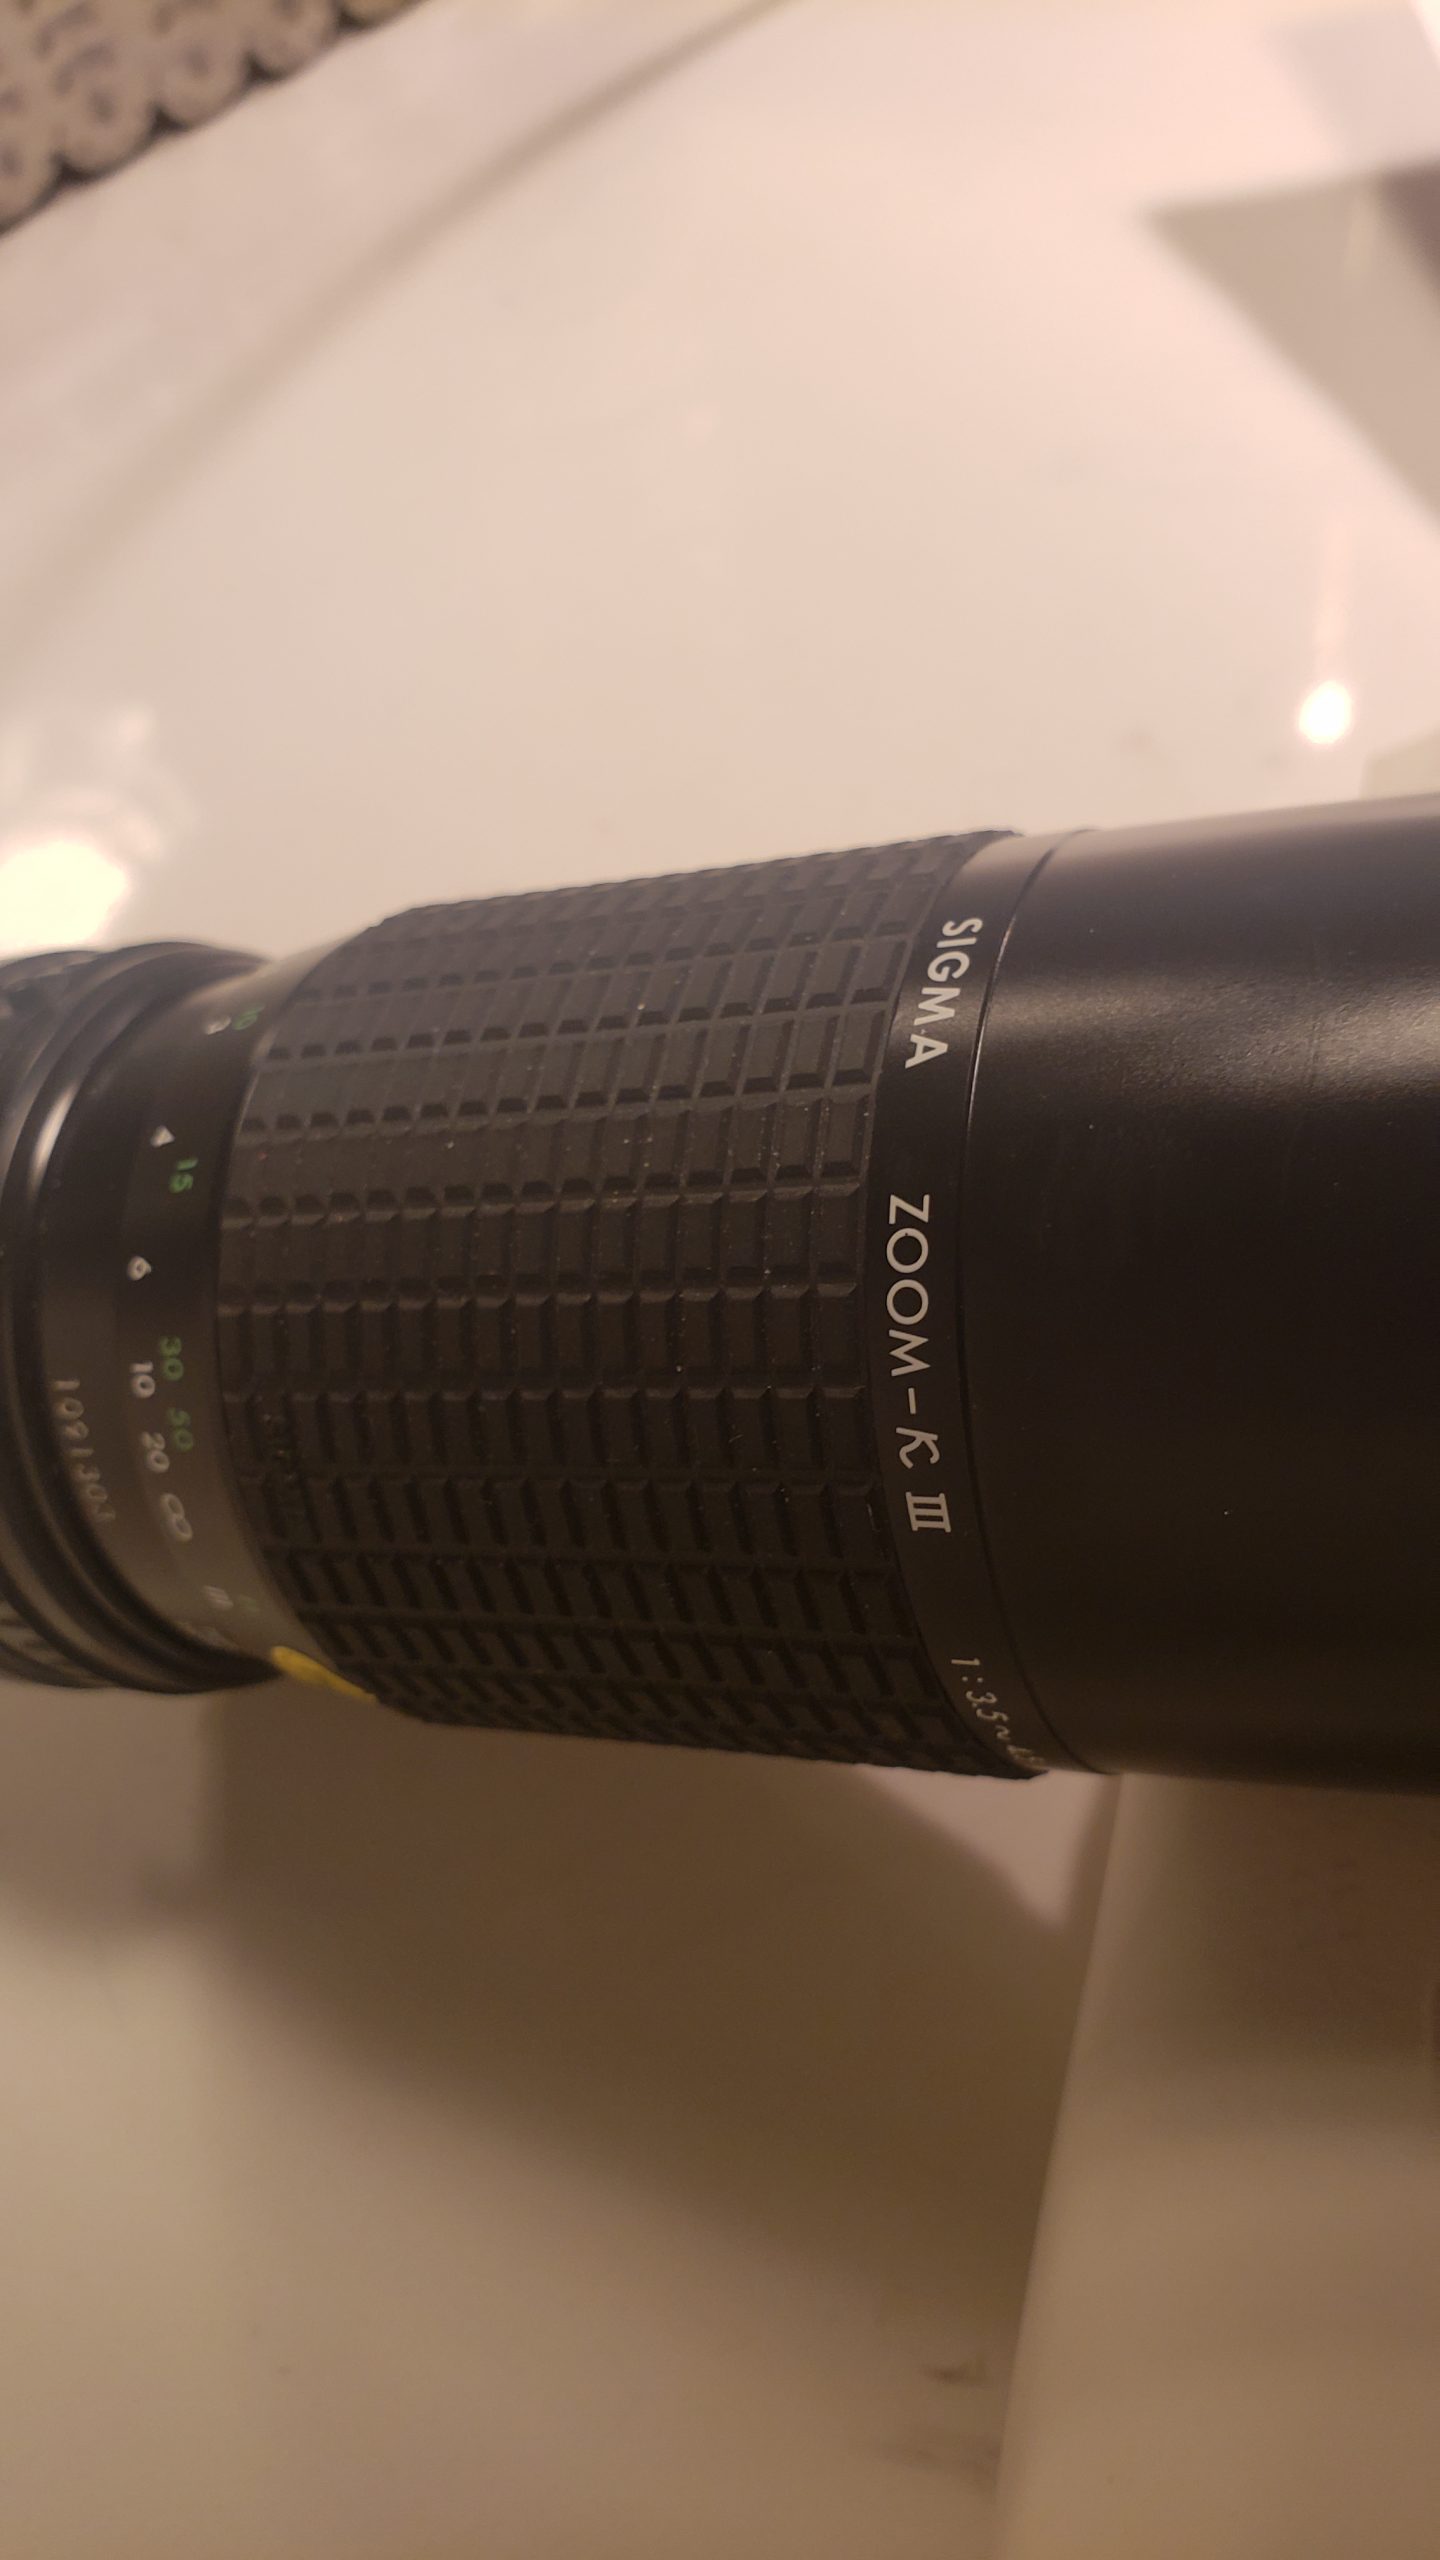 Hoya brand single vision stock lenses